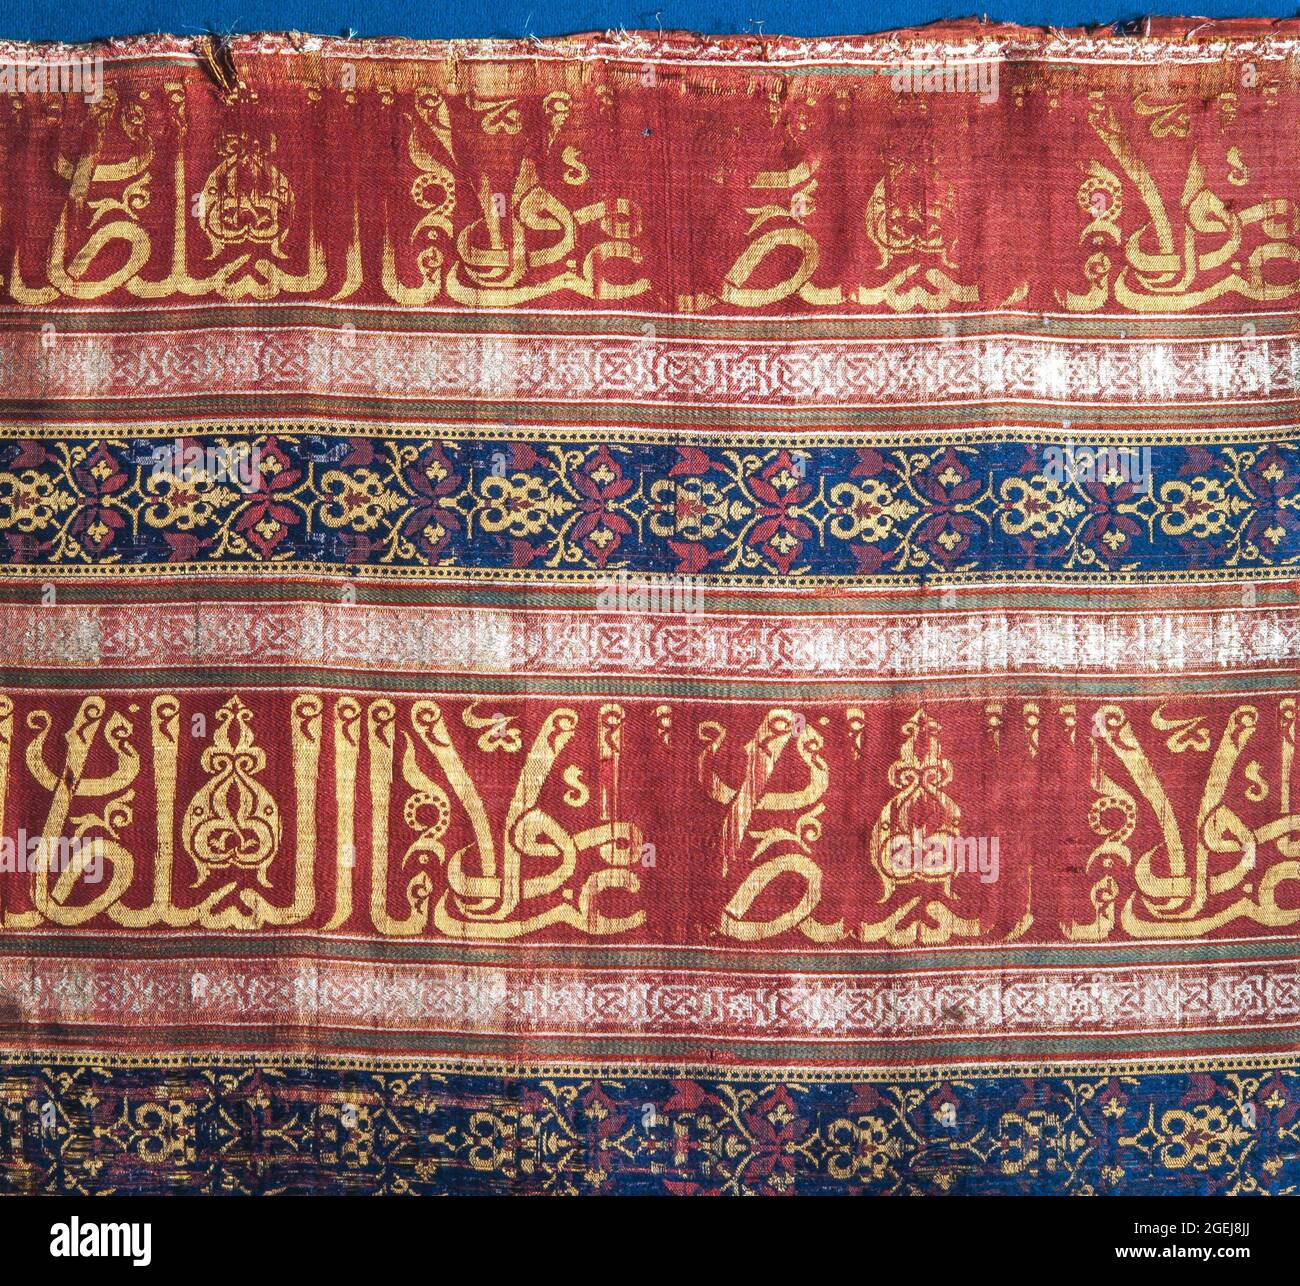 Detalle de bordado en tejido hispano árabe, siglo XIII, Museu Tèxtil de Terrassa. Stock Photo